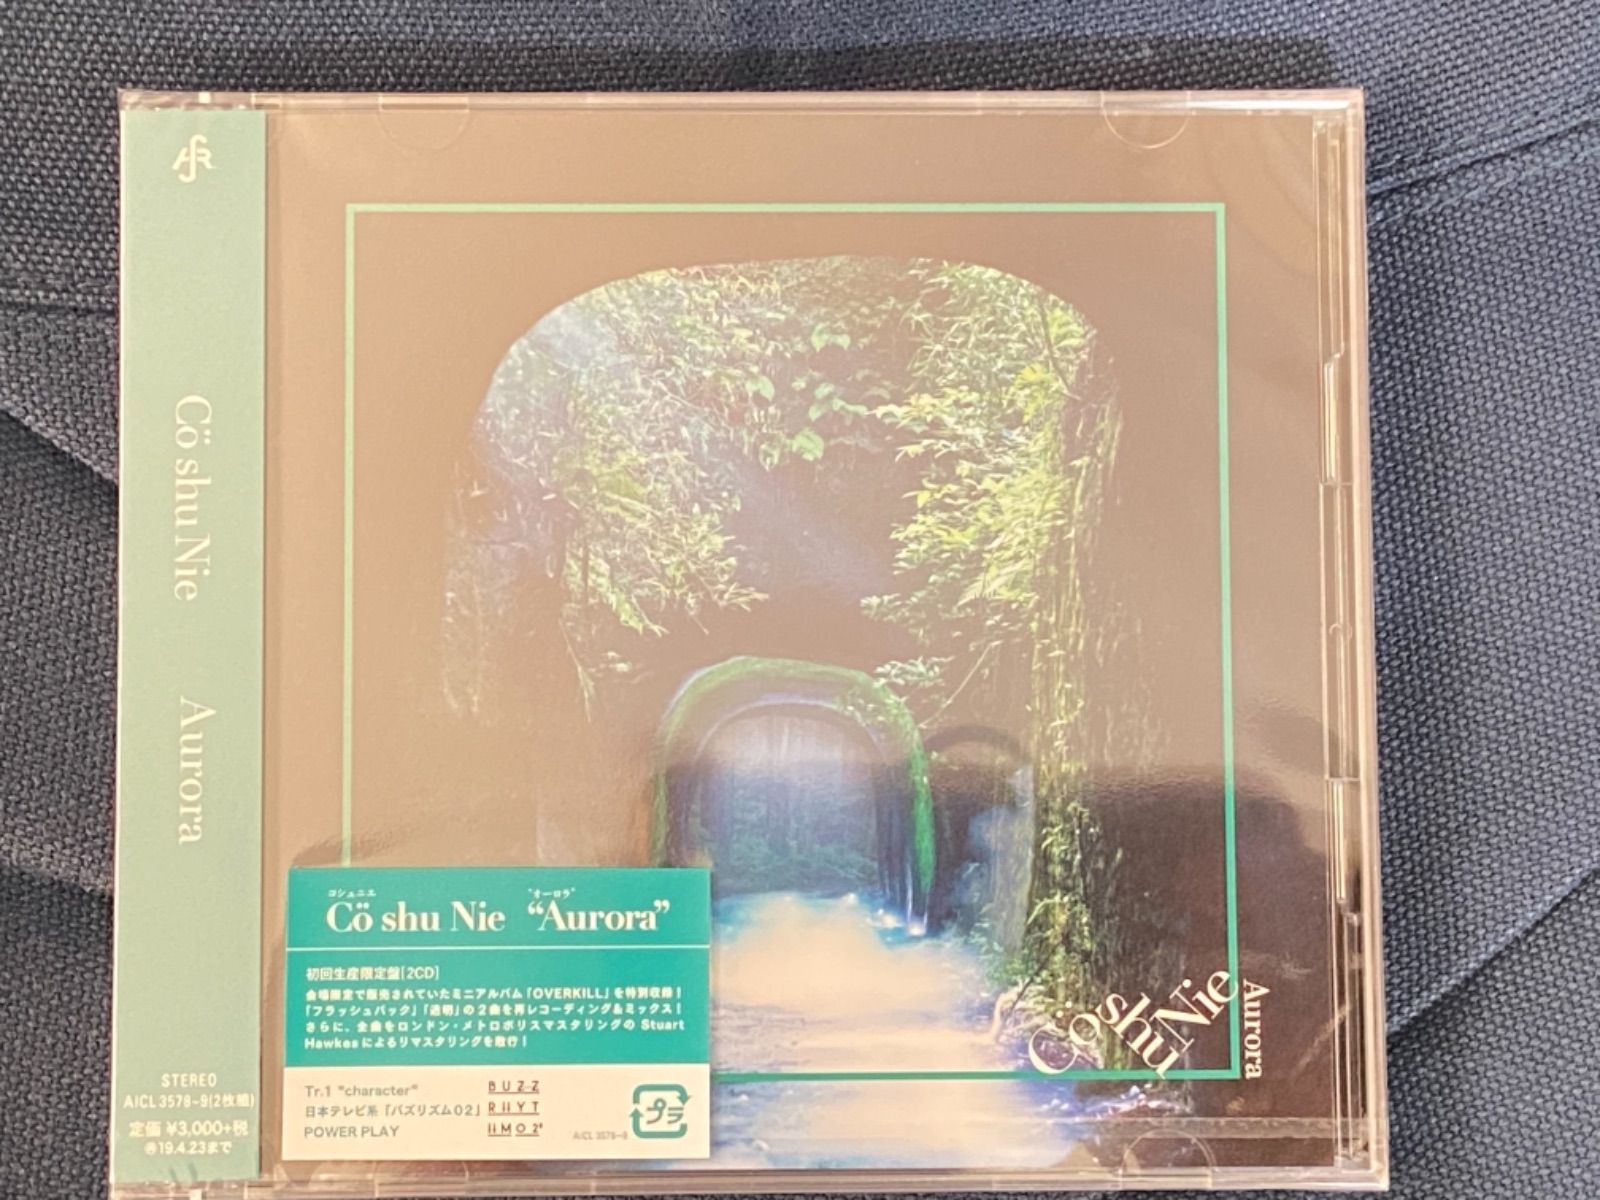 Co shu Nie CD Aurora 初回生産限定盤